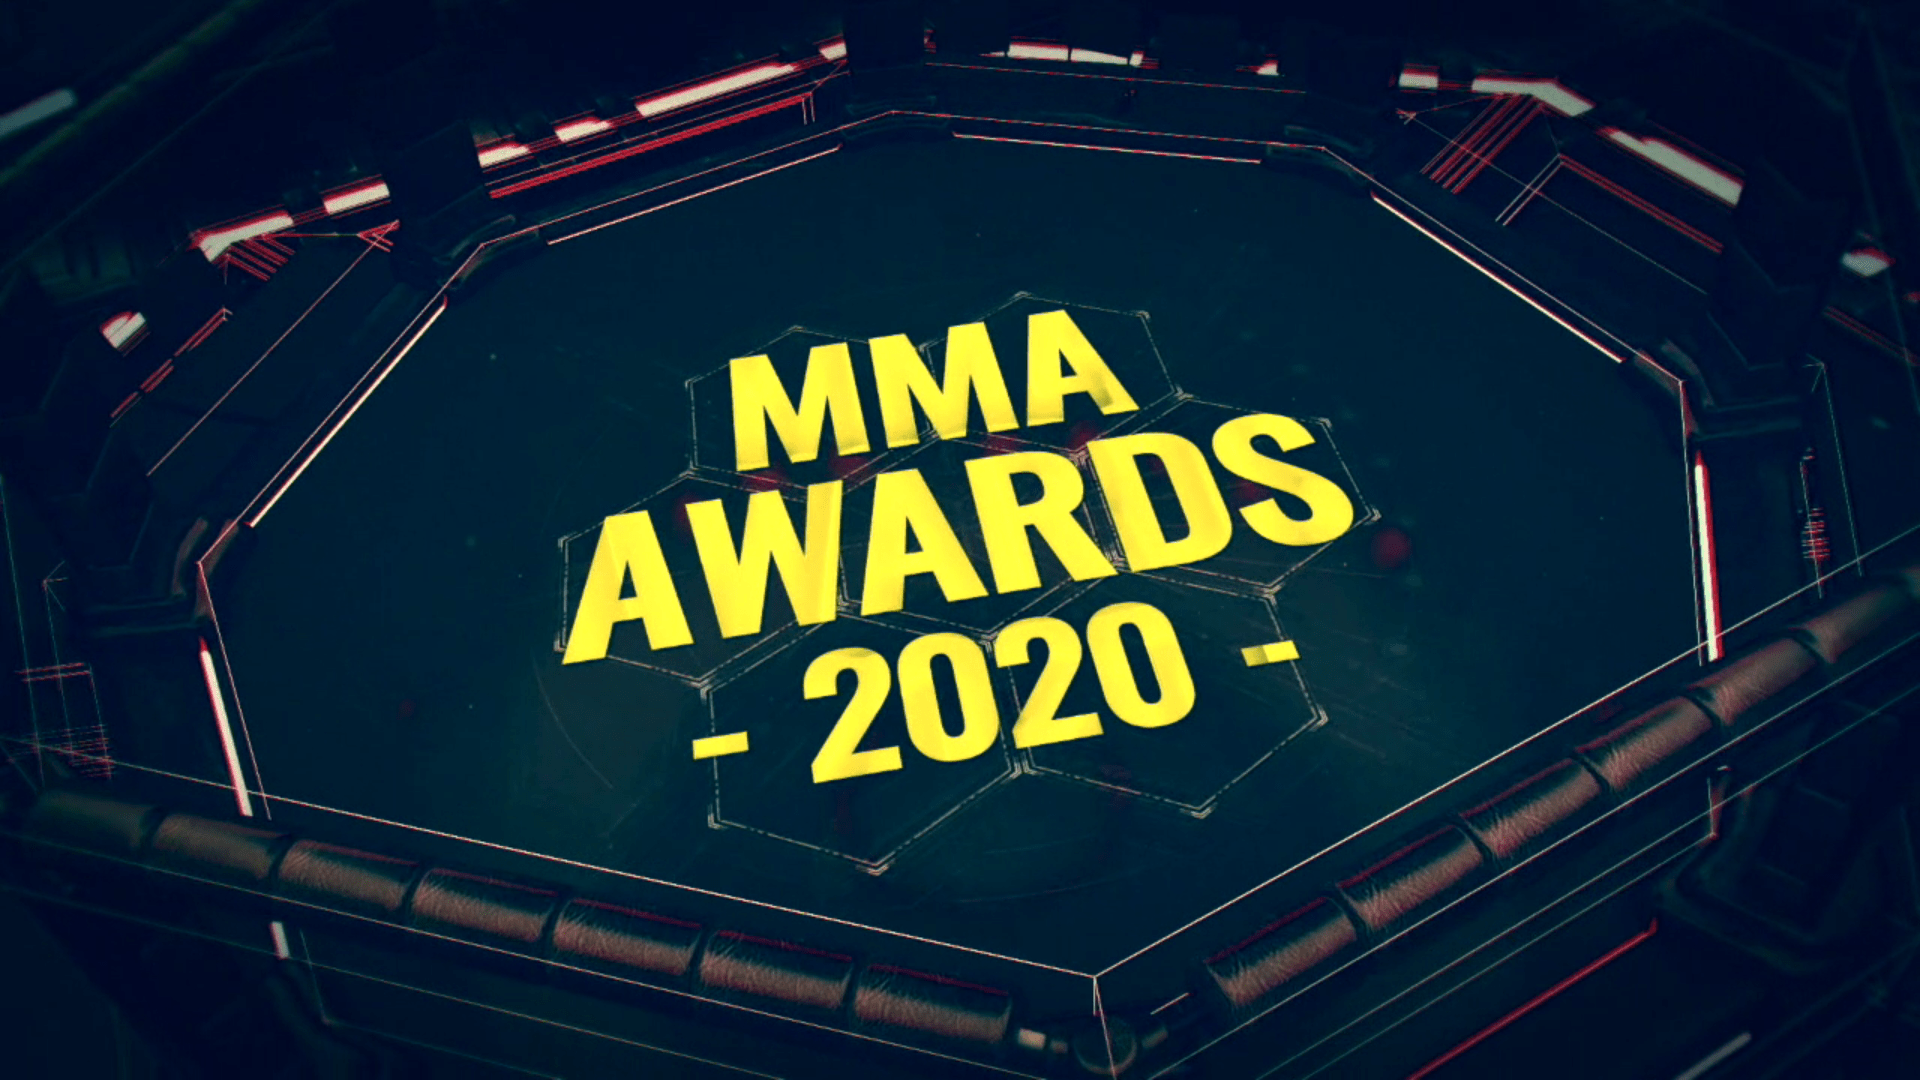 MMA AWARDS 2020 le nomination. A voi la scelta! Fight Sport Italia